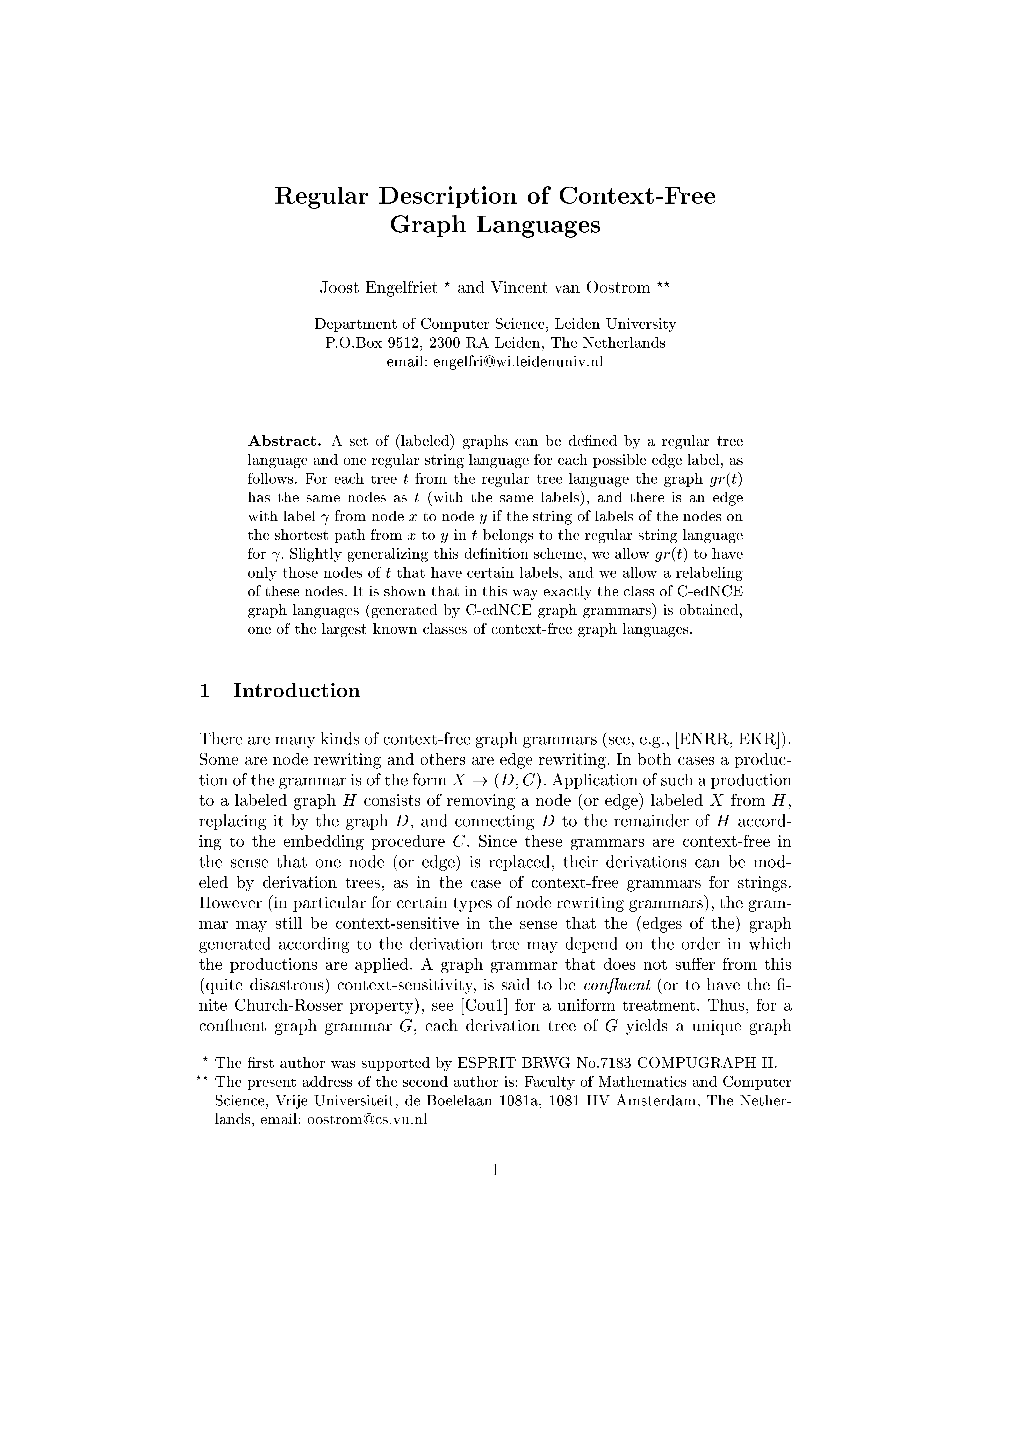 Regular Description of Context-Free Graph Languages